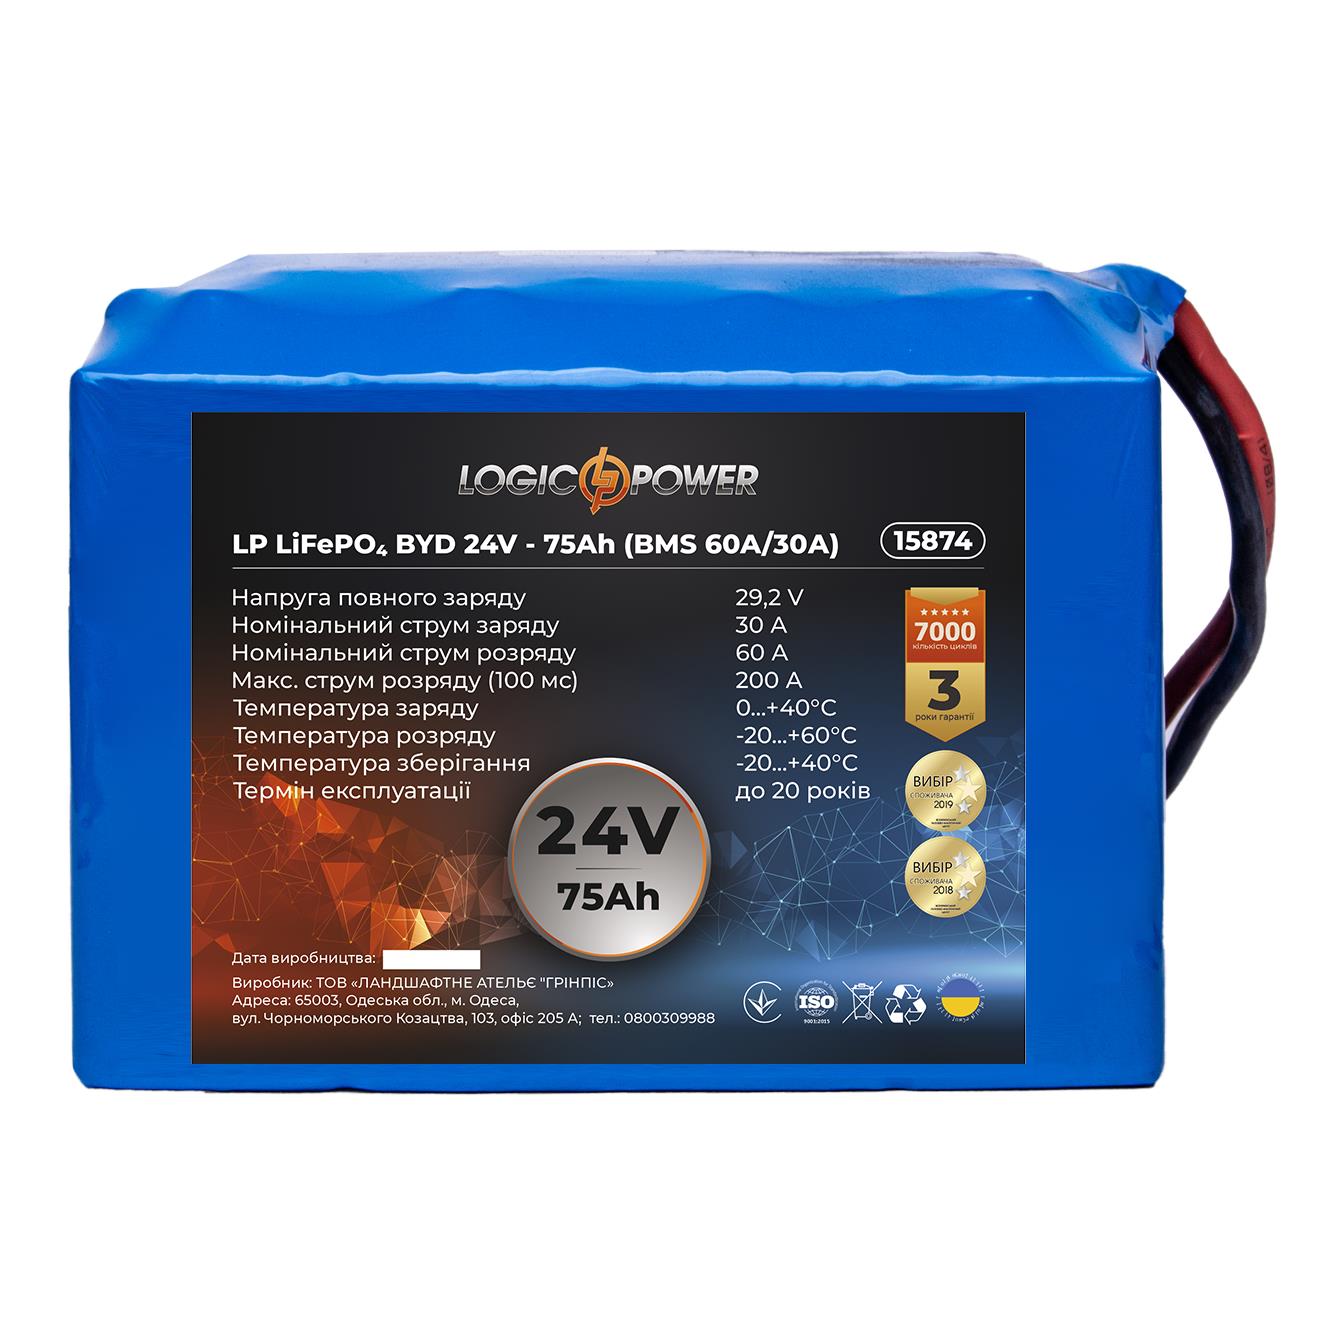 Аккумулятор литий-железо-фосфатный LogicPower LP LiFePO4 BYD 24V - 75 Ah (BMS 60A/30A) (15874) в интернет-магазине, главное фото